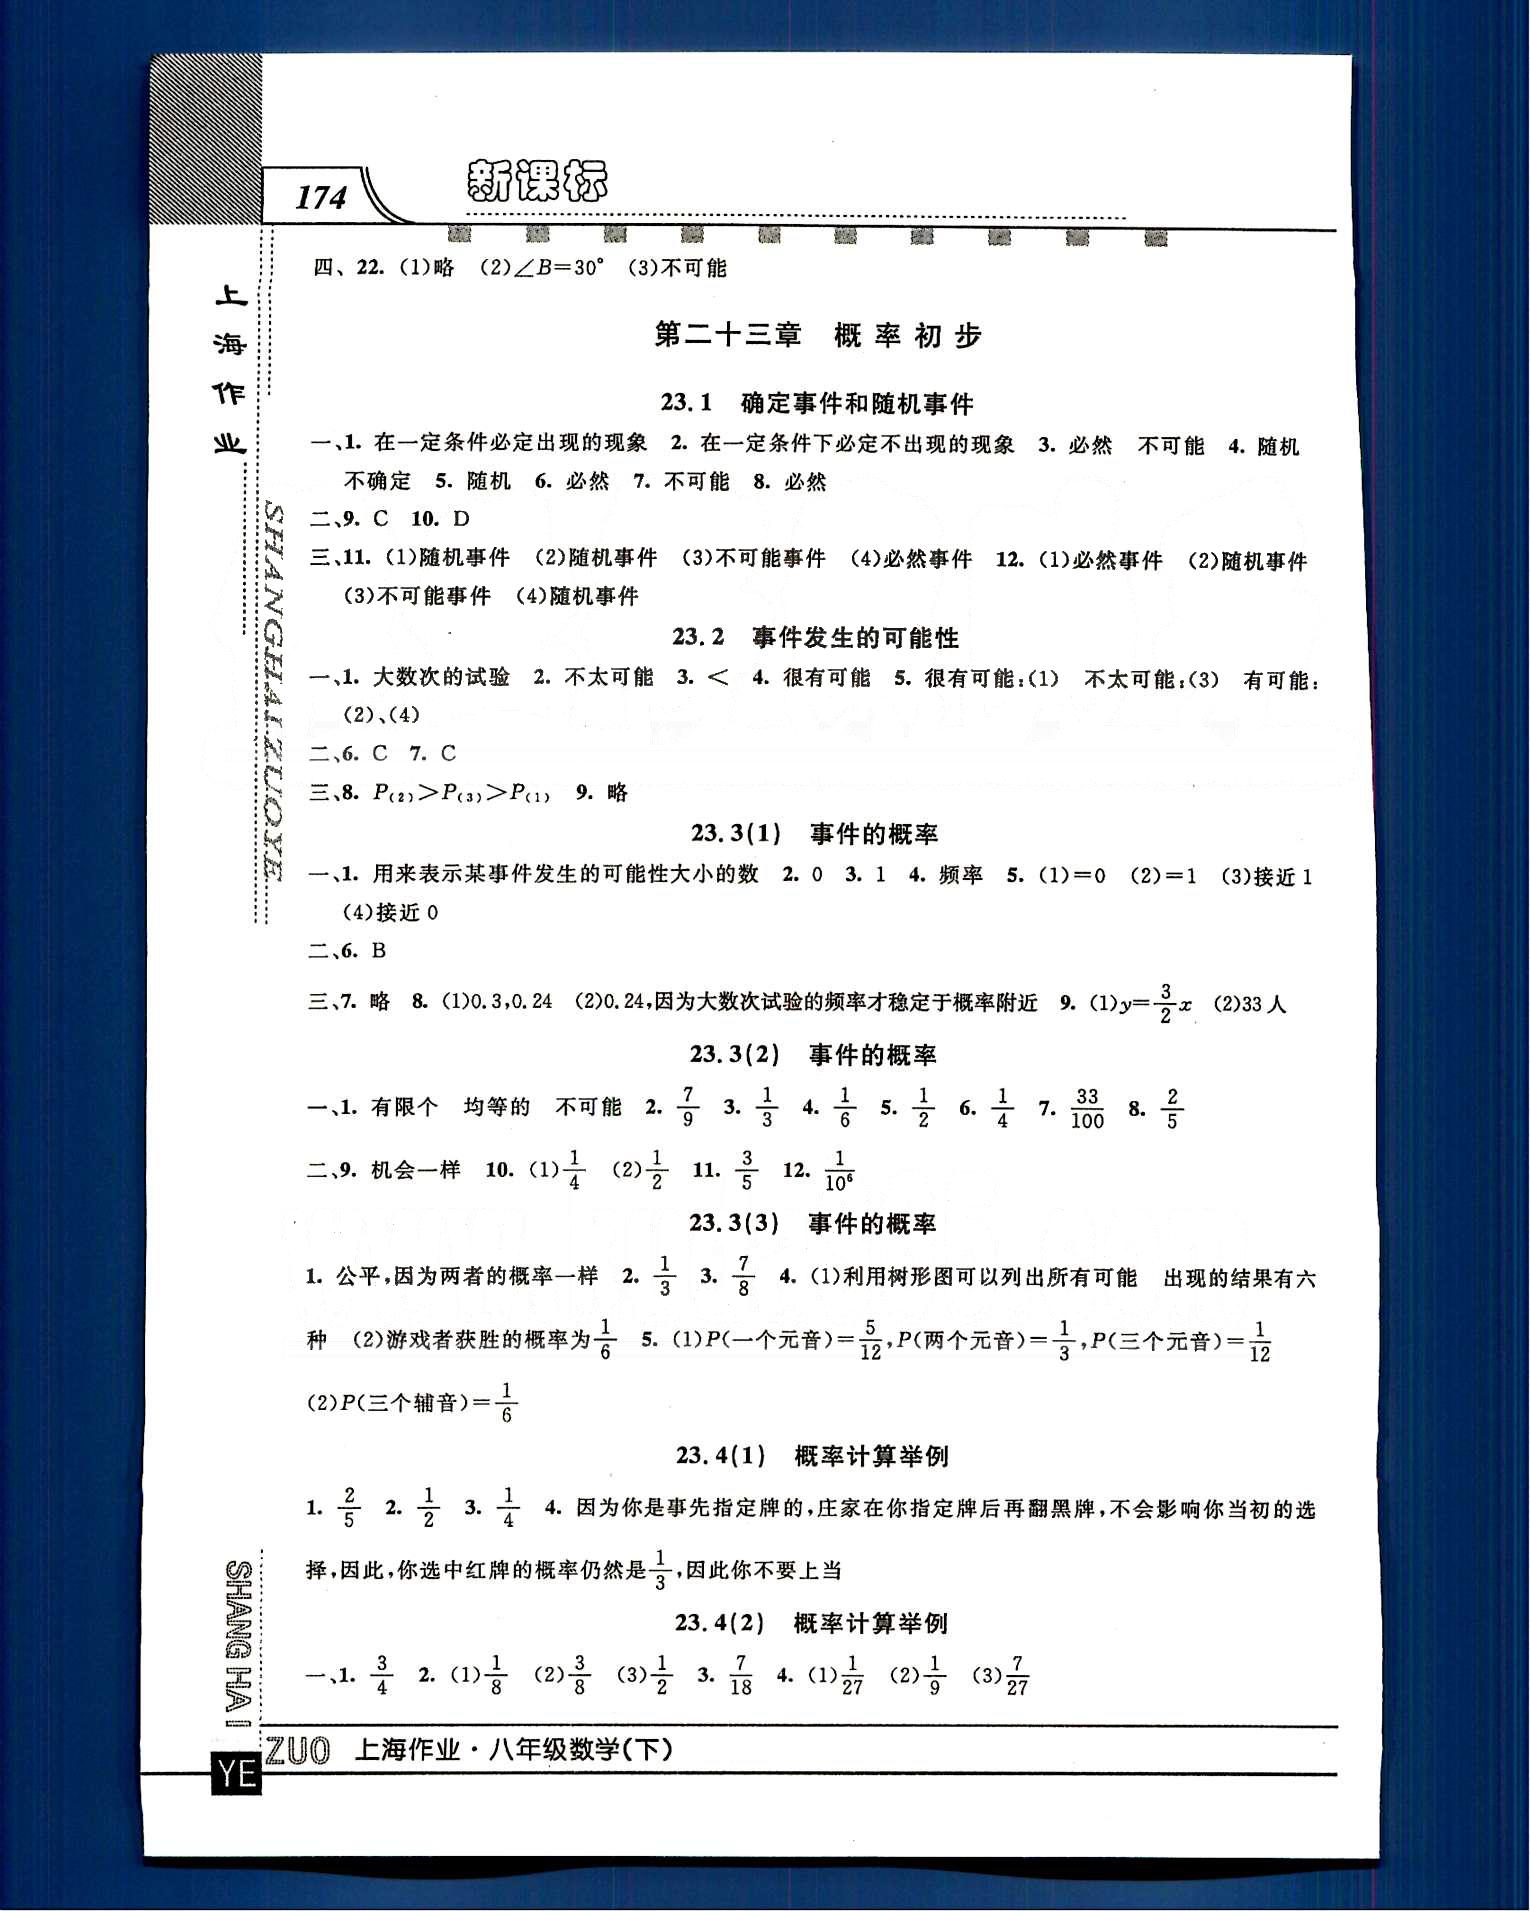 20145 钟书金牌 上海作业八年级下数学上海大学出版社 第二十章-第二十三章 [10]